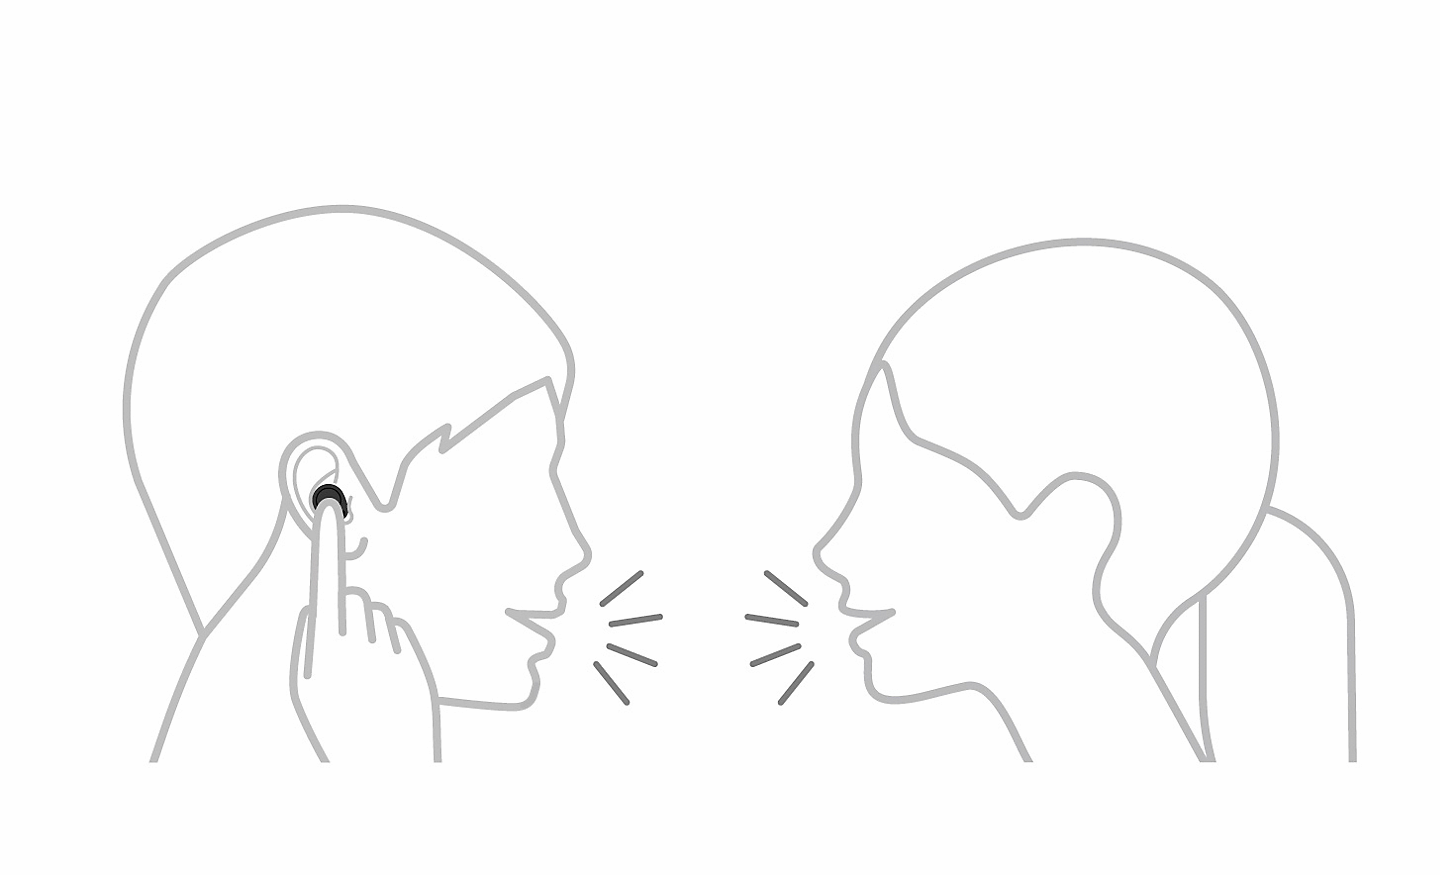 Dessin au trait de deux personnes qui parlent, l'une touchant son écouteur avec un doigt, avec une icône pause en haut à gauche